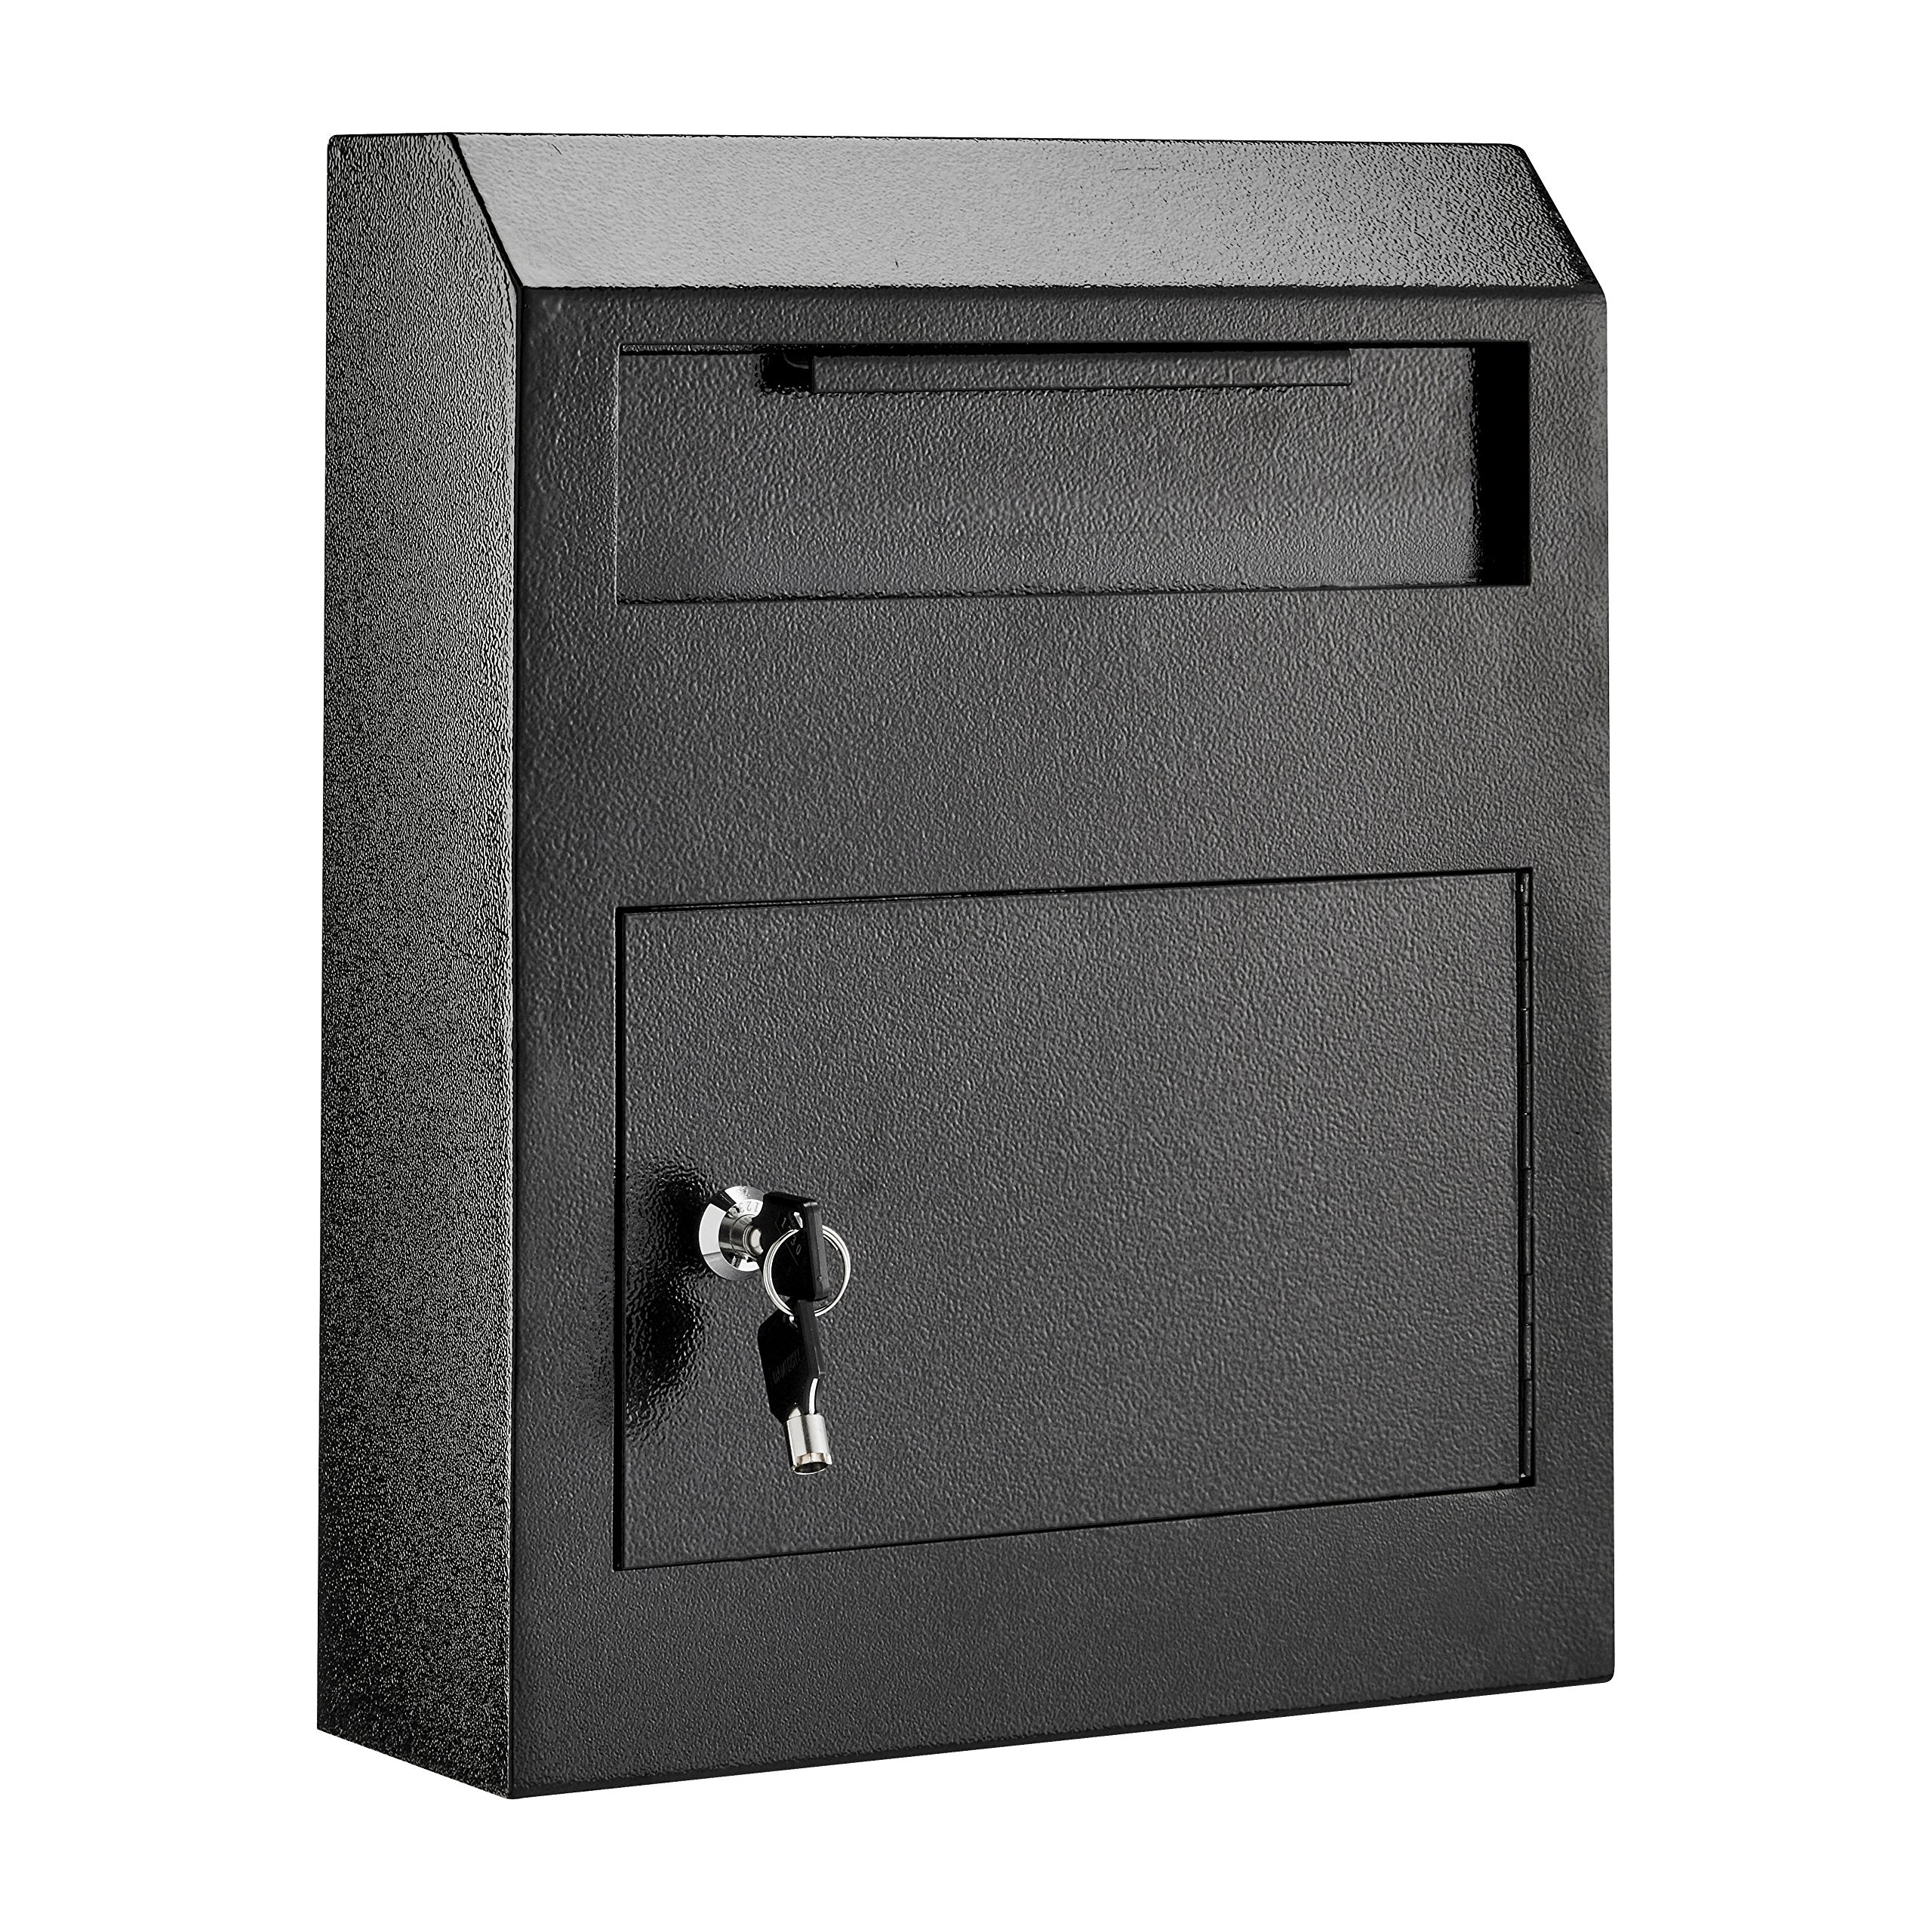 AdirOffice Heavy Duty Secured Safe Drop Box - Suggestion Box - Locking Mailbox - Key Drop Box - Wall Mounted Mail Box - Safe Lock Box - Ballot Box - Donation Box (Black)  - Like New